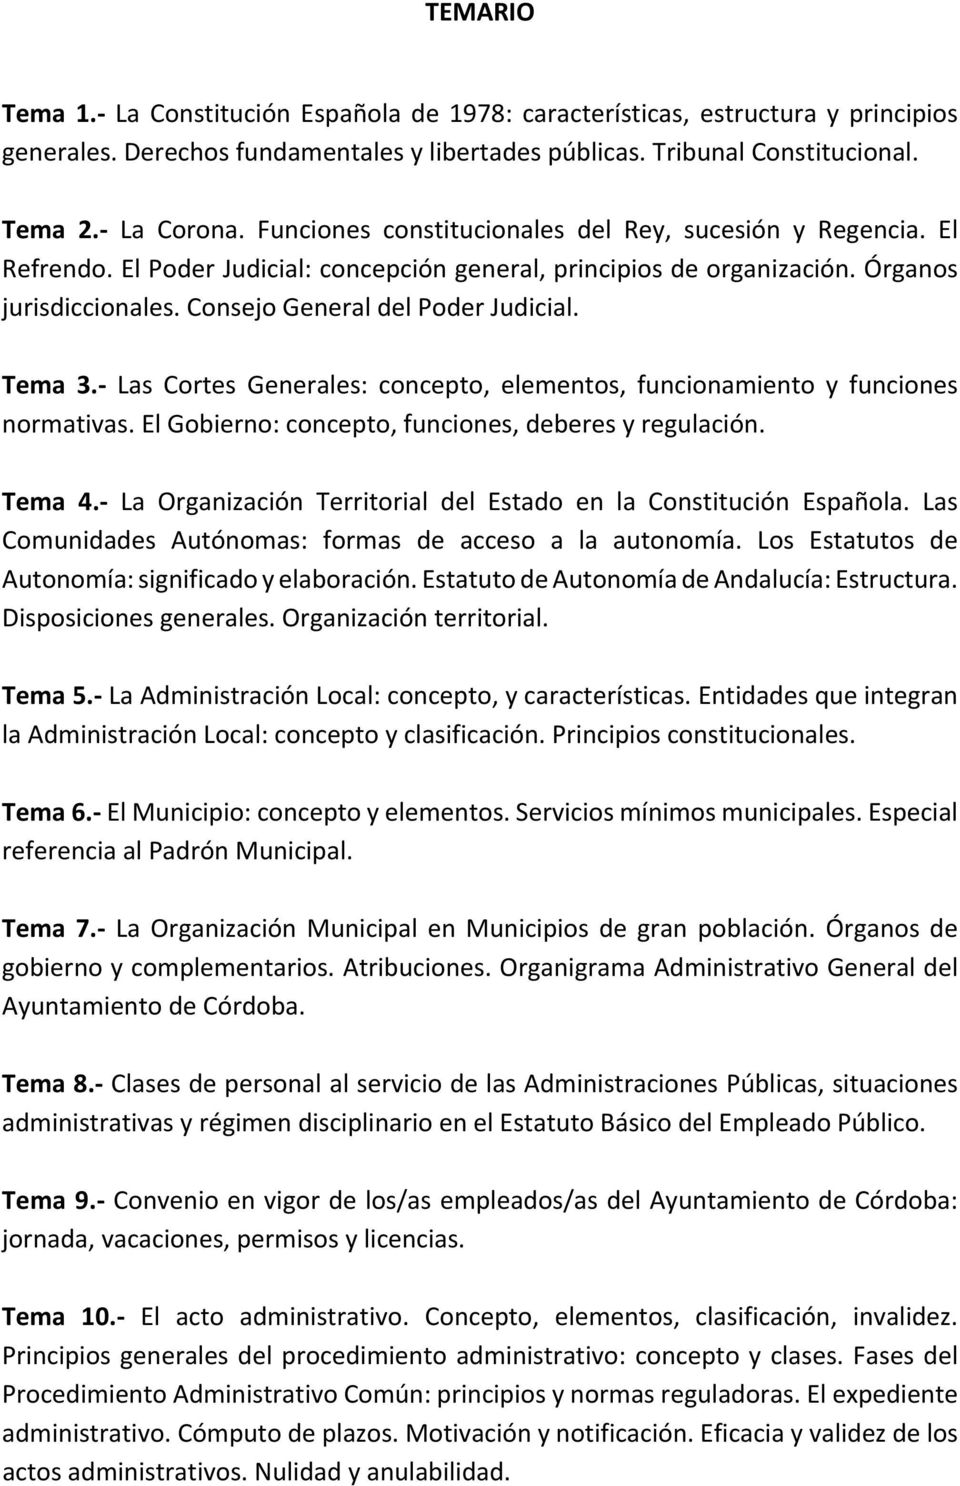 Tema 3. Las Cortes Generales: concepto, elementos, funcionamiento y funciones normativas. El Gobierno: concepto, funciones, deberes y regulación. Tema 4.